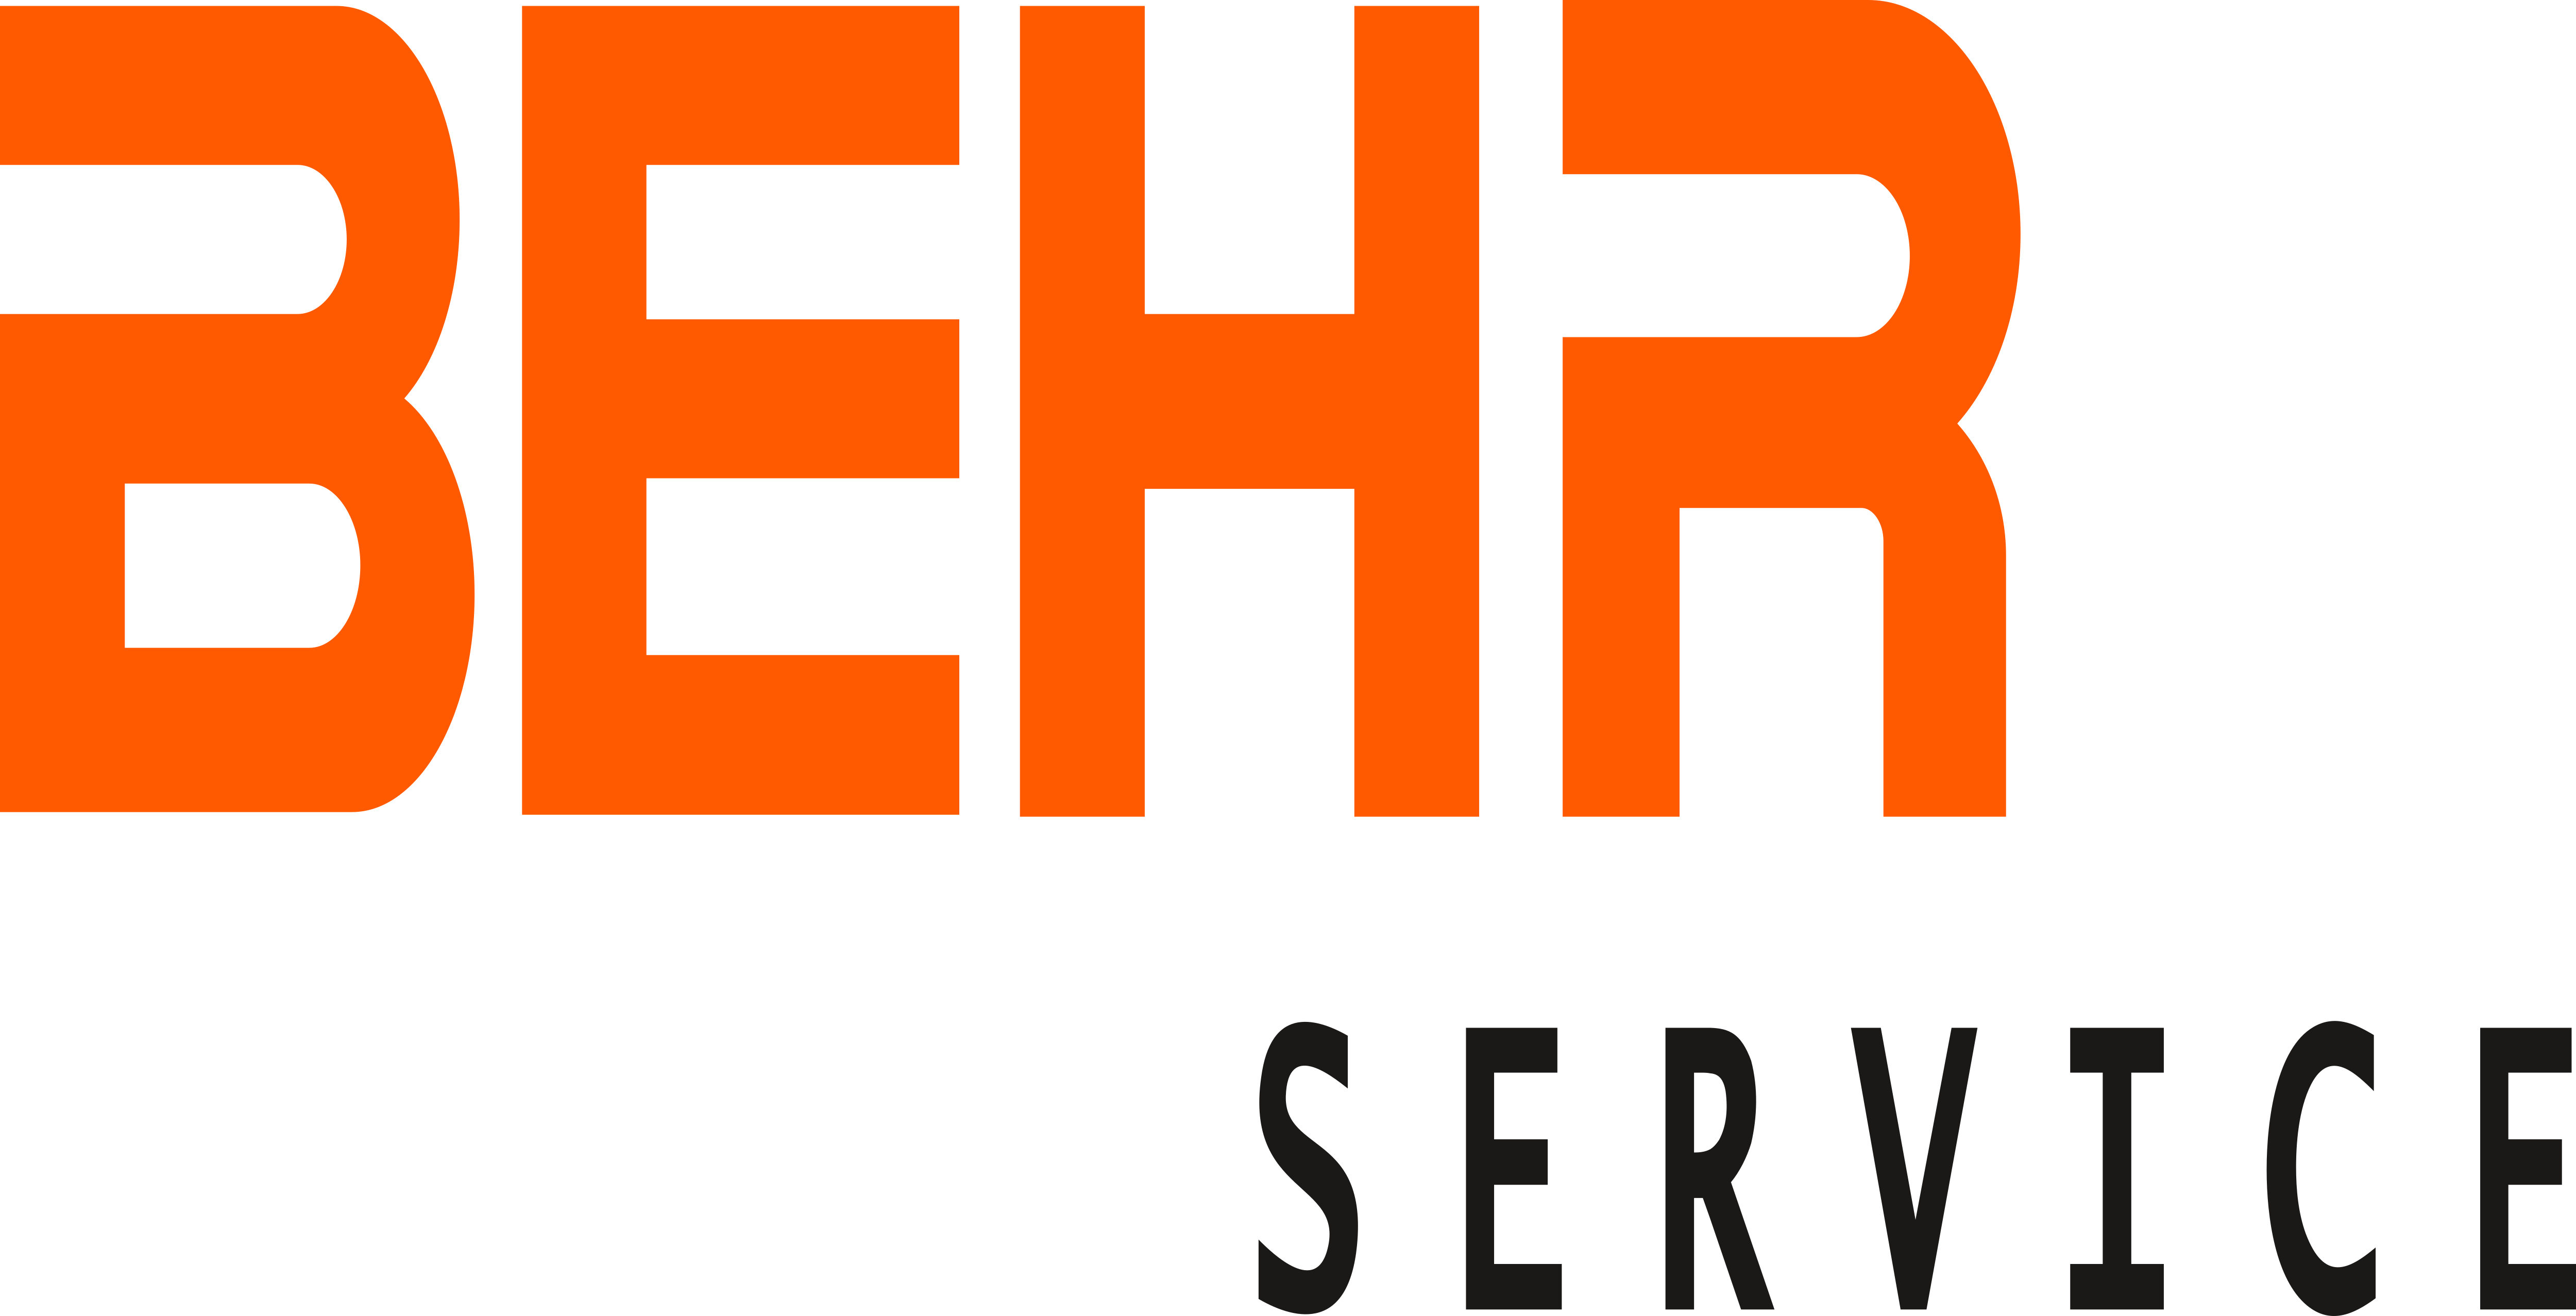 Behr Logo - Behr Service – Logos Download